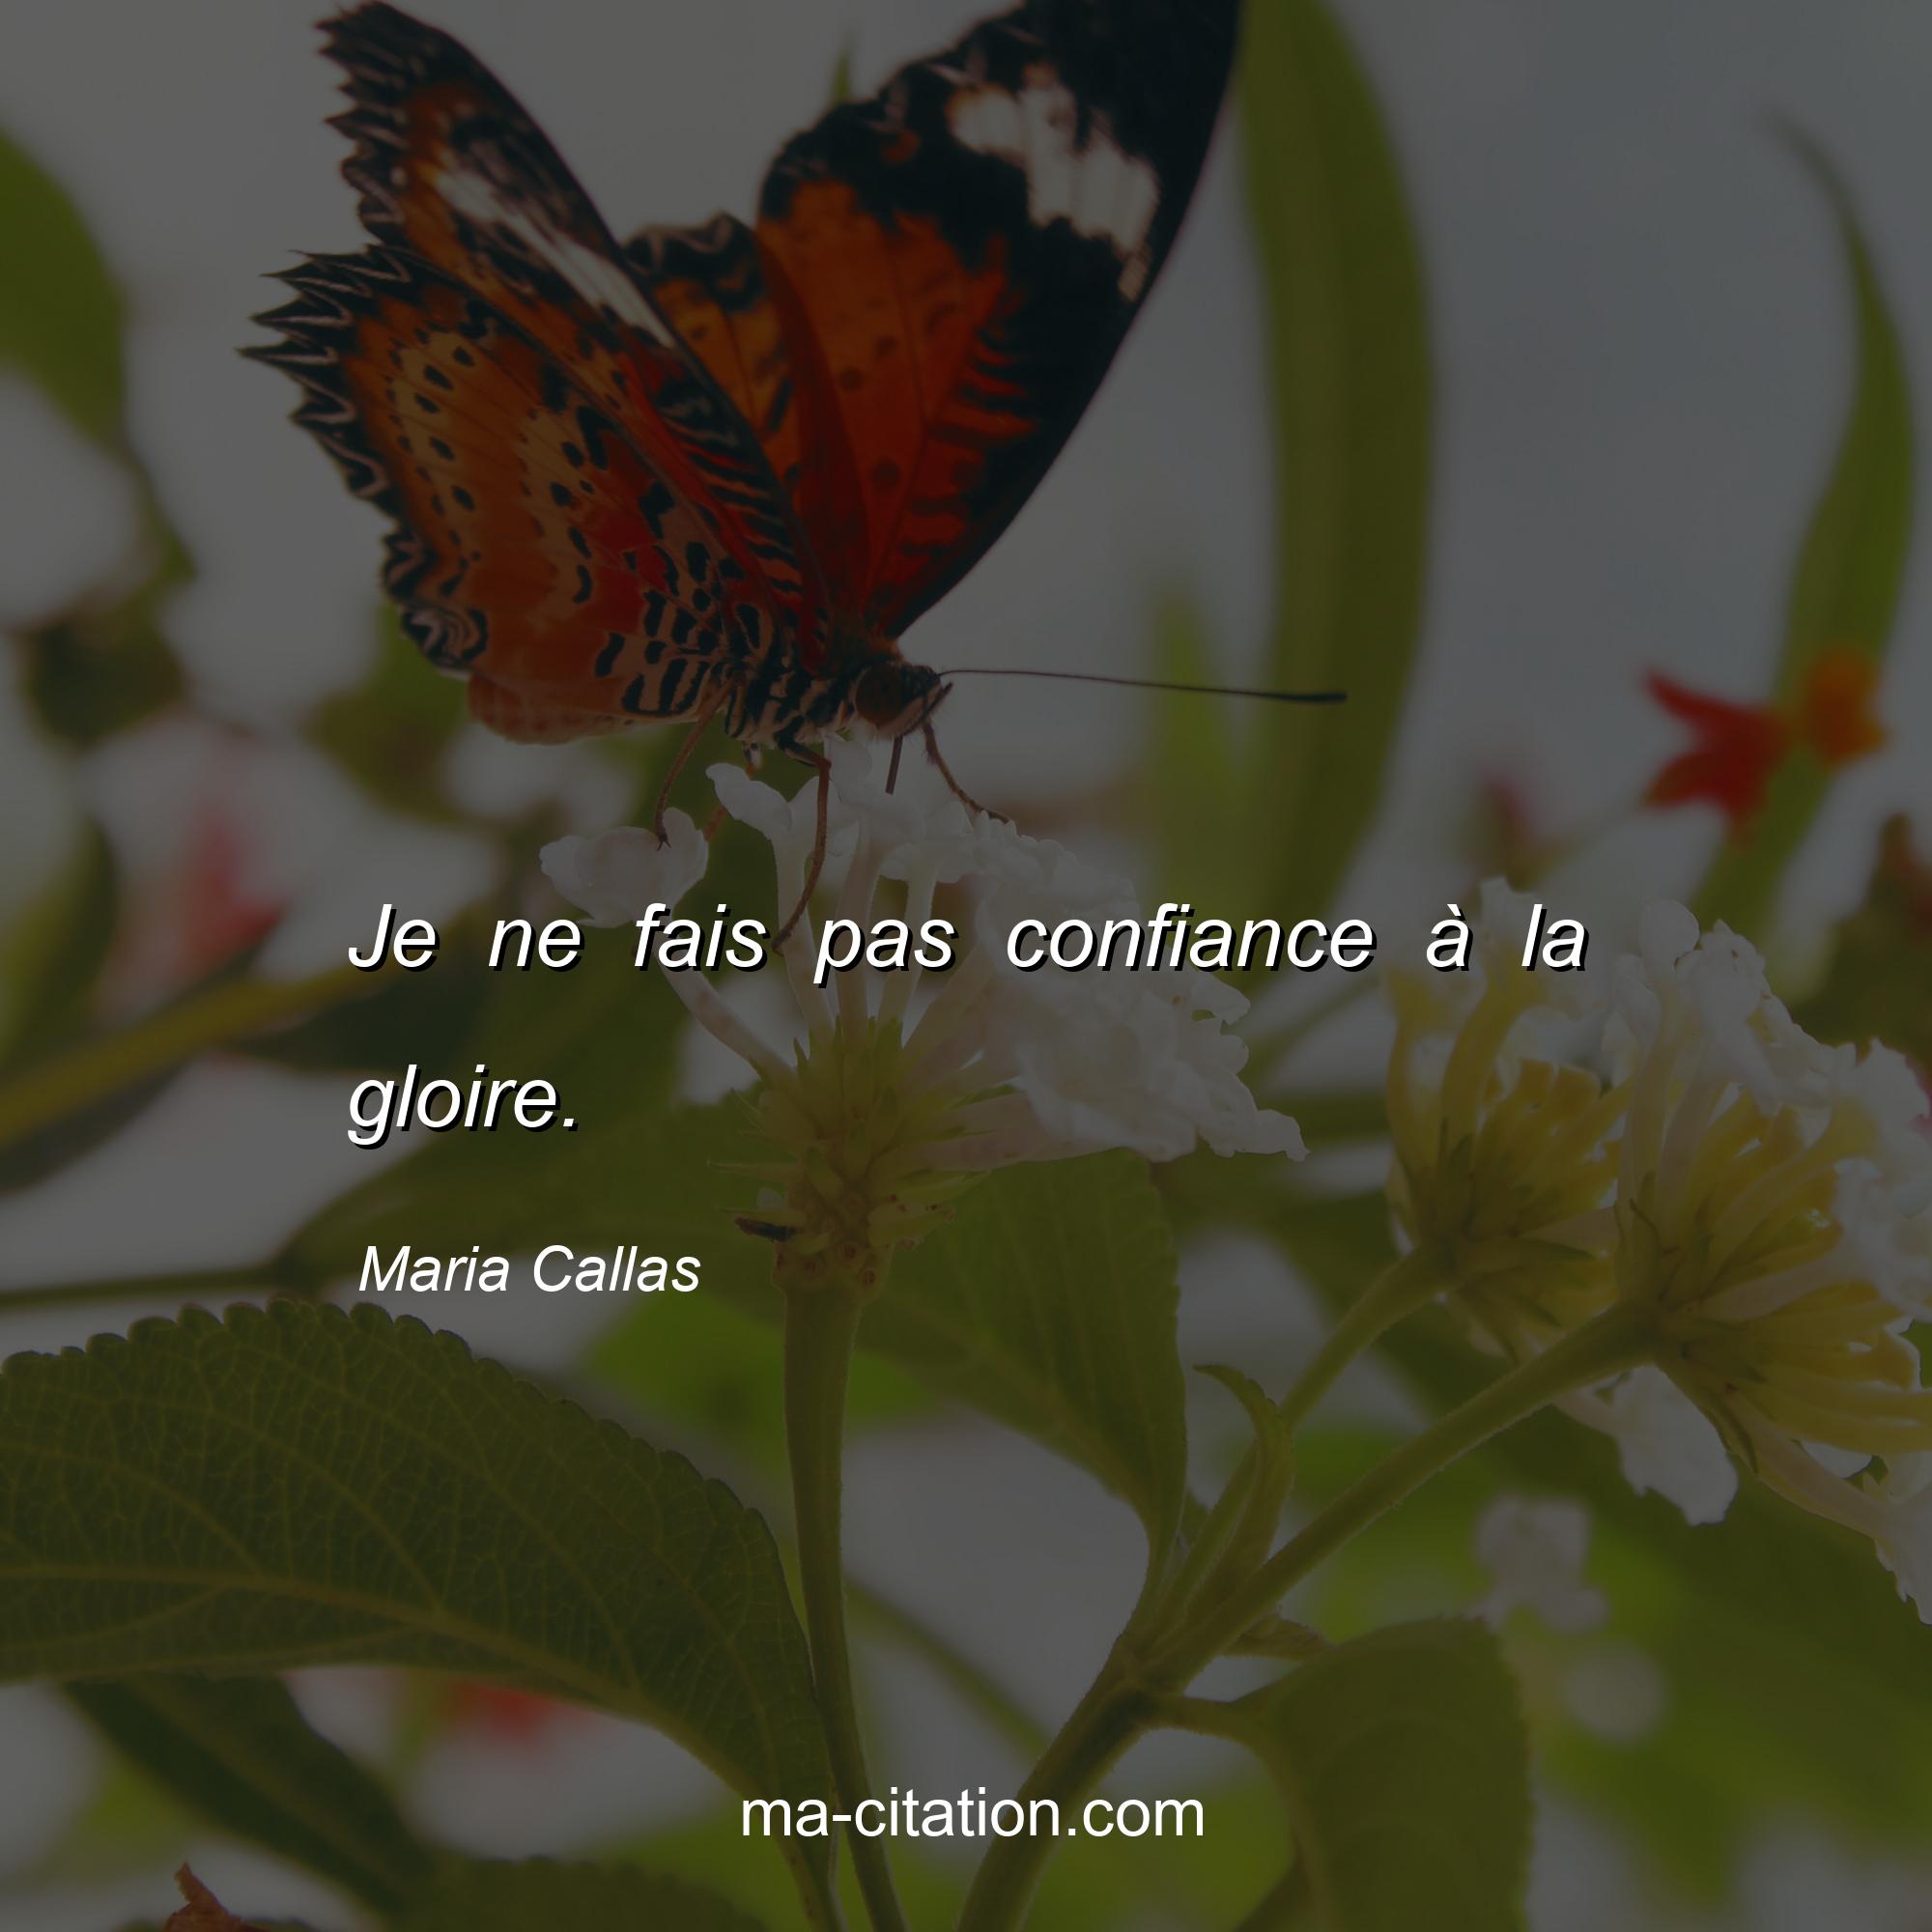 Maria Callas : Je ne fais pas confiance à la gloire.